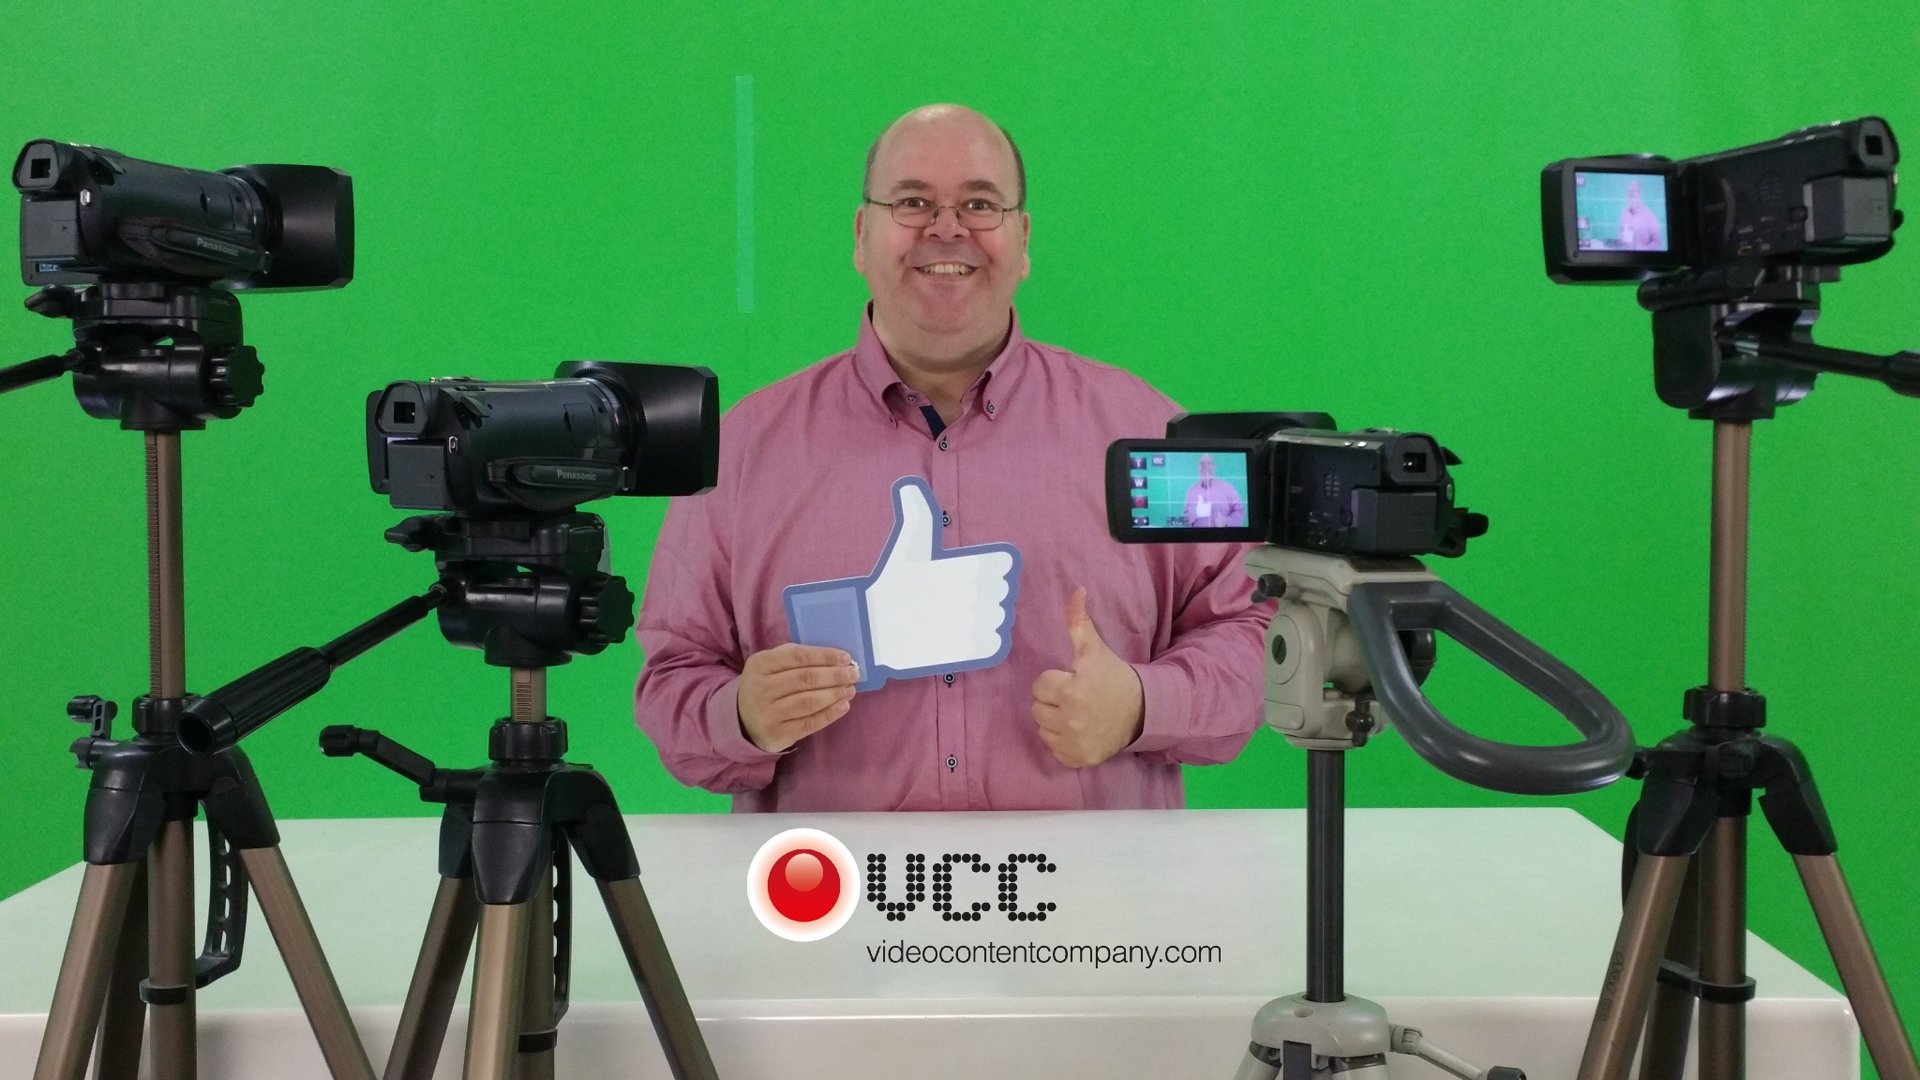 Livestream greenscreen studio VCC VideoContentCompany neemt met meerdere camera's tegelijk op